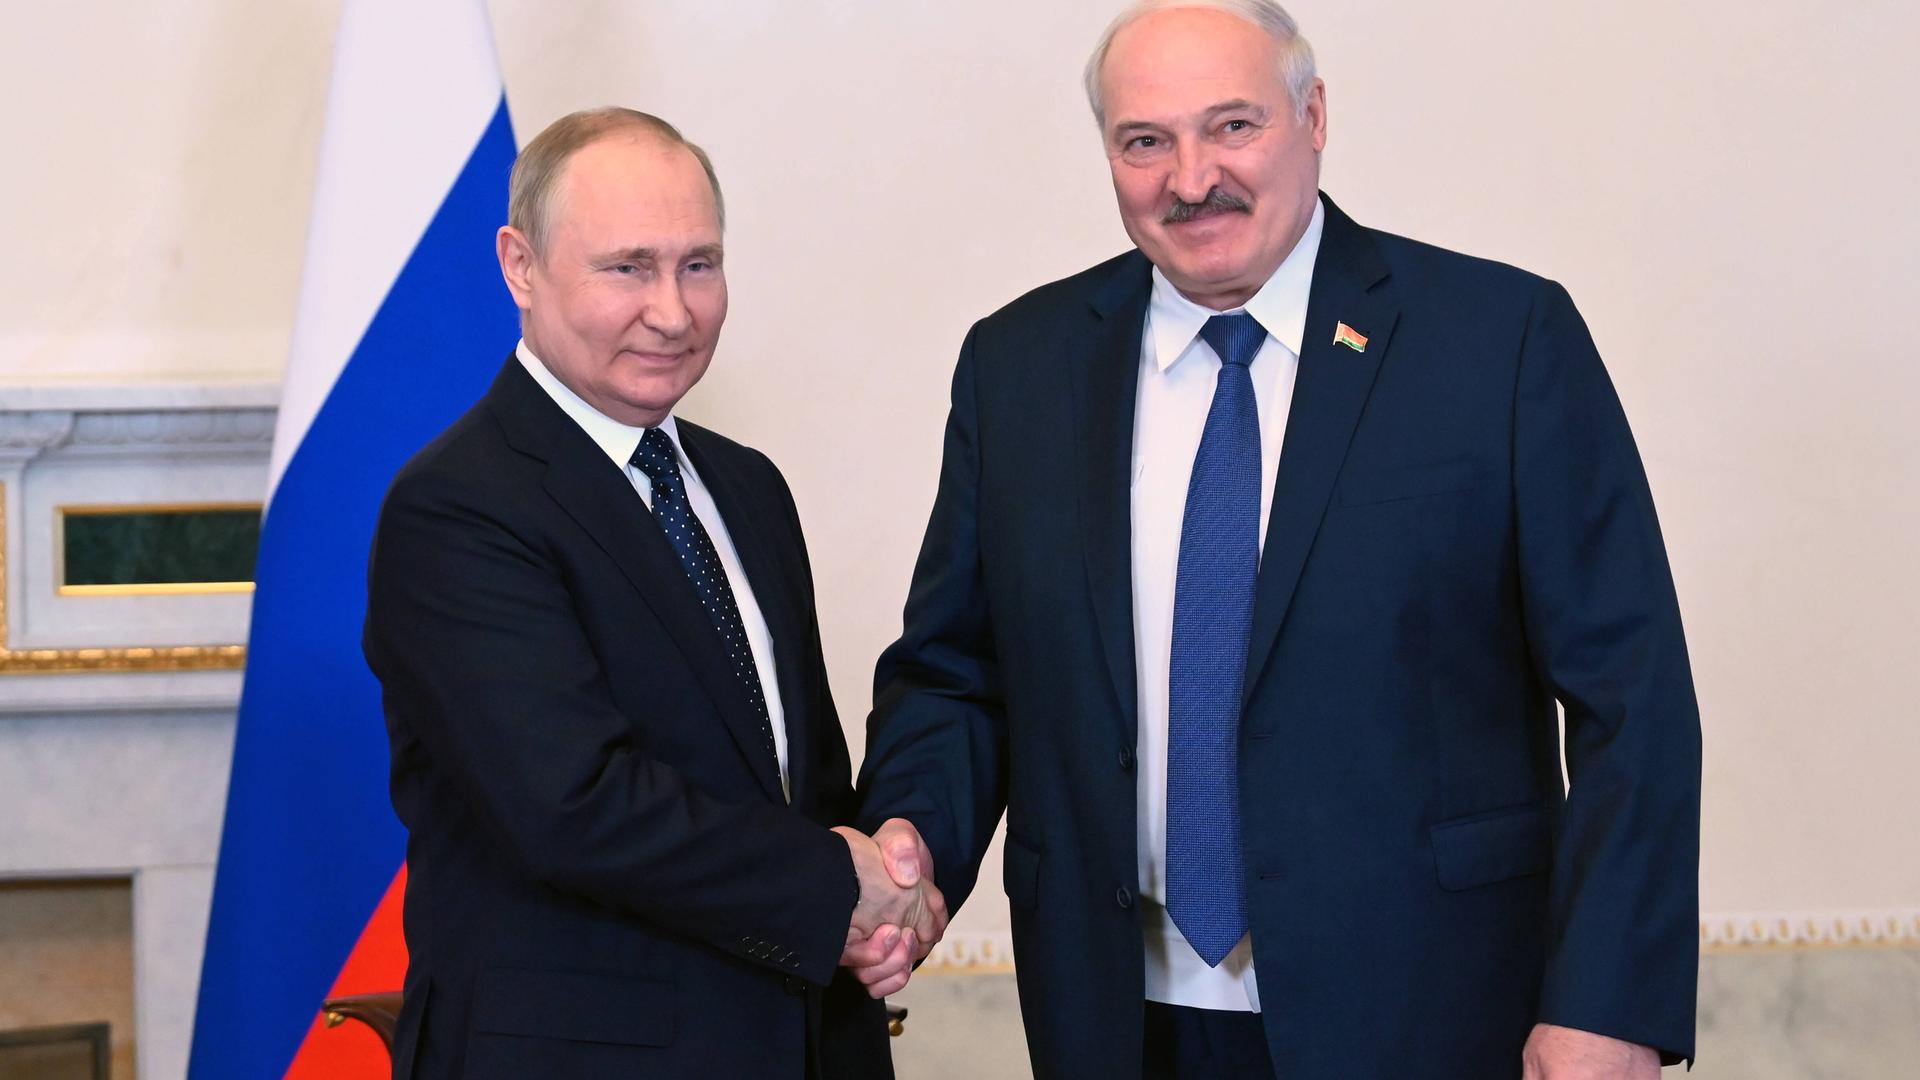 Russlands Präsident Wladimir Putin mit dem belarusischen Diktator Alexander Lukaschenko